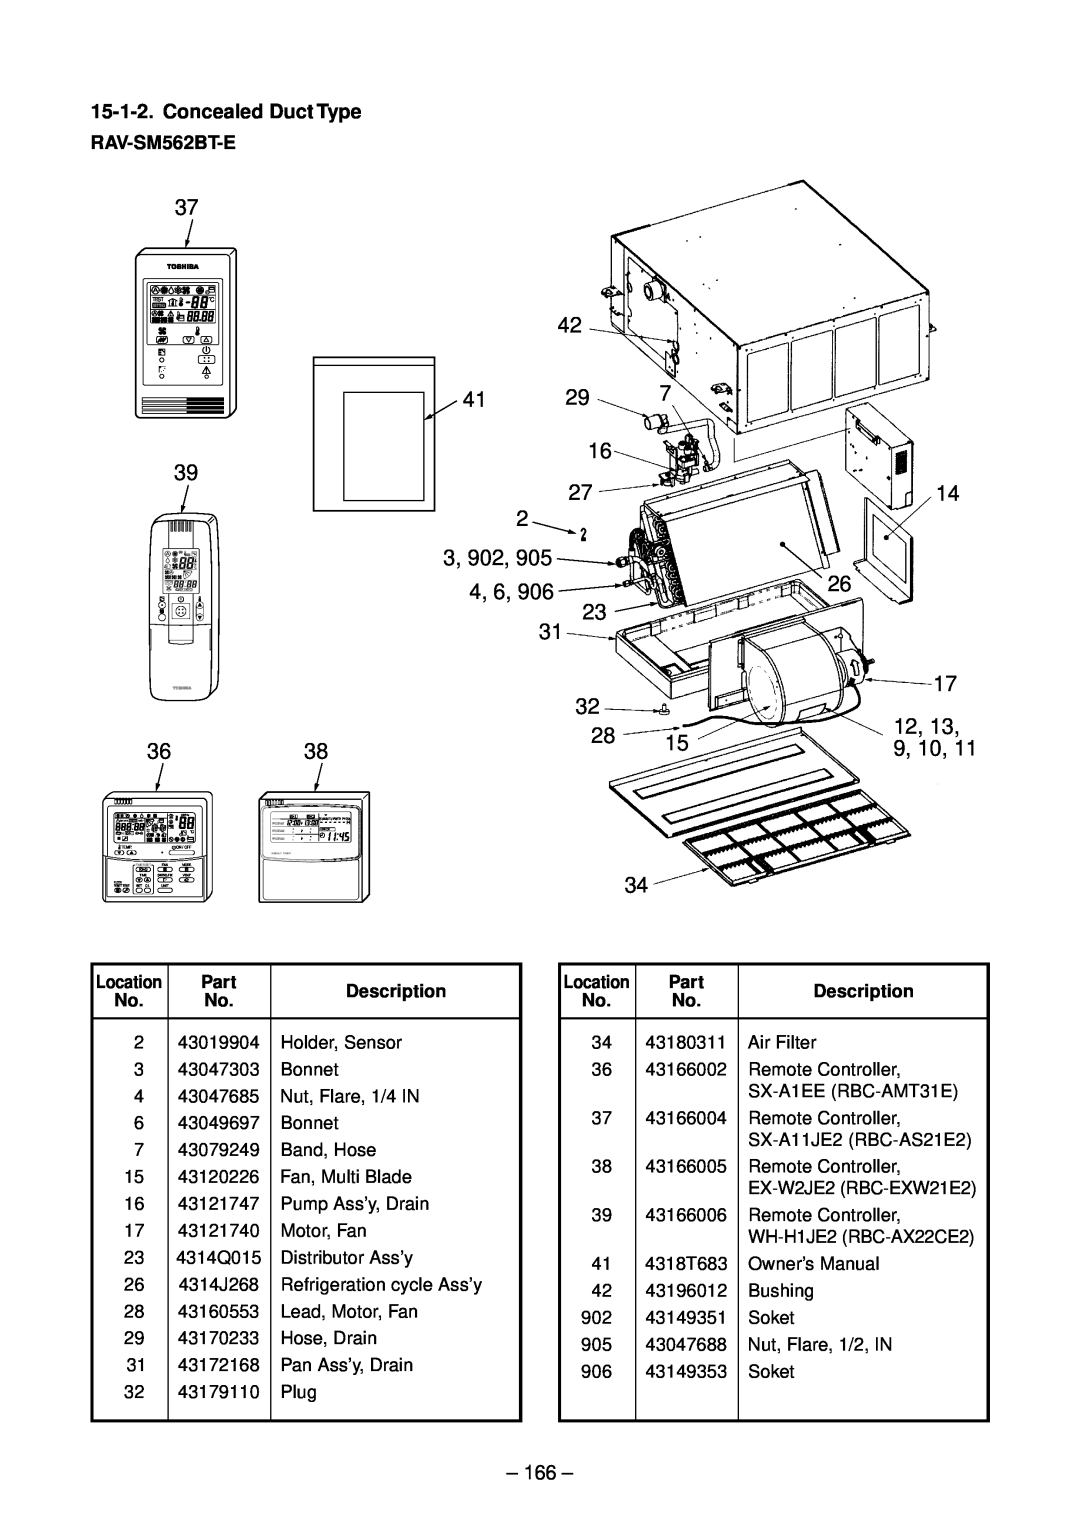 Toshiba RAV-SM562BT-E, RAV-SM1102CT-E, RAV-SM1102BT-E 3, 902, 4, 6, 9, 10, Concealed Duct Type, Part, Description 